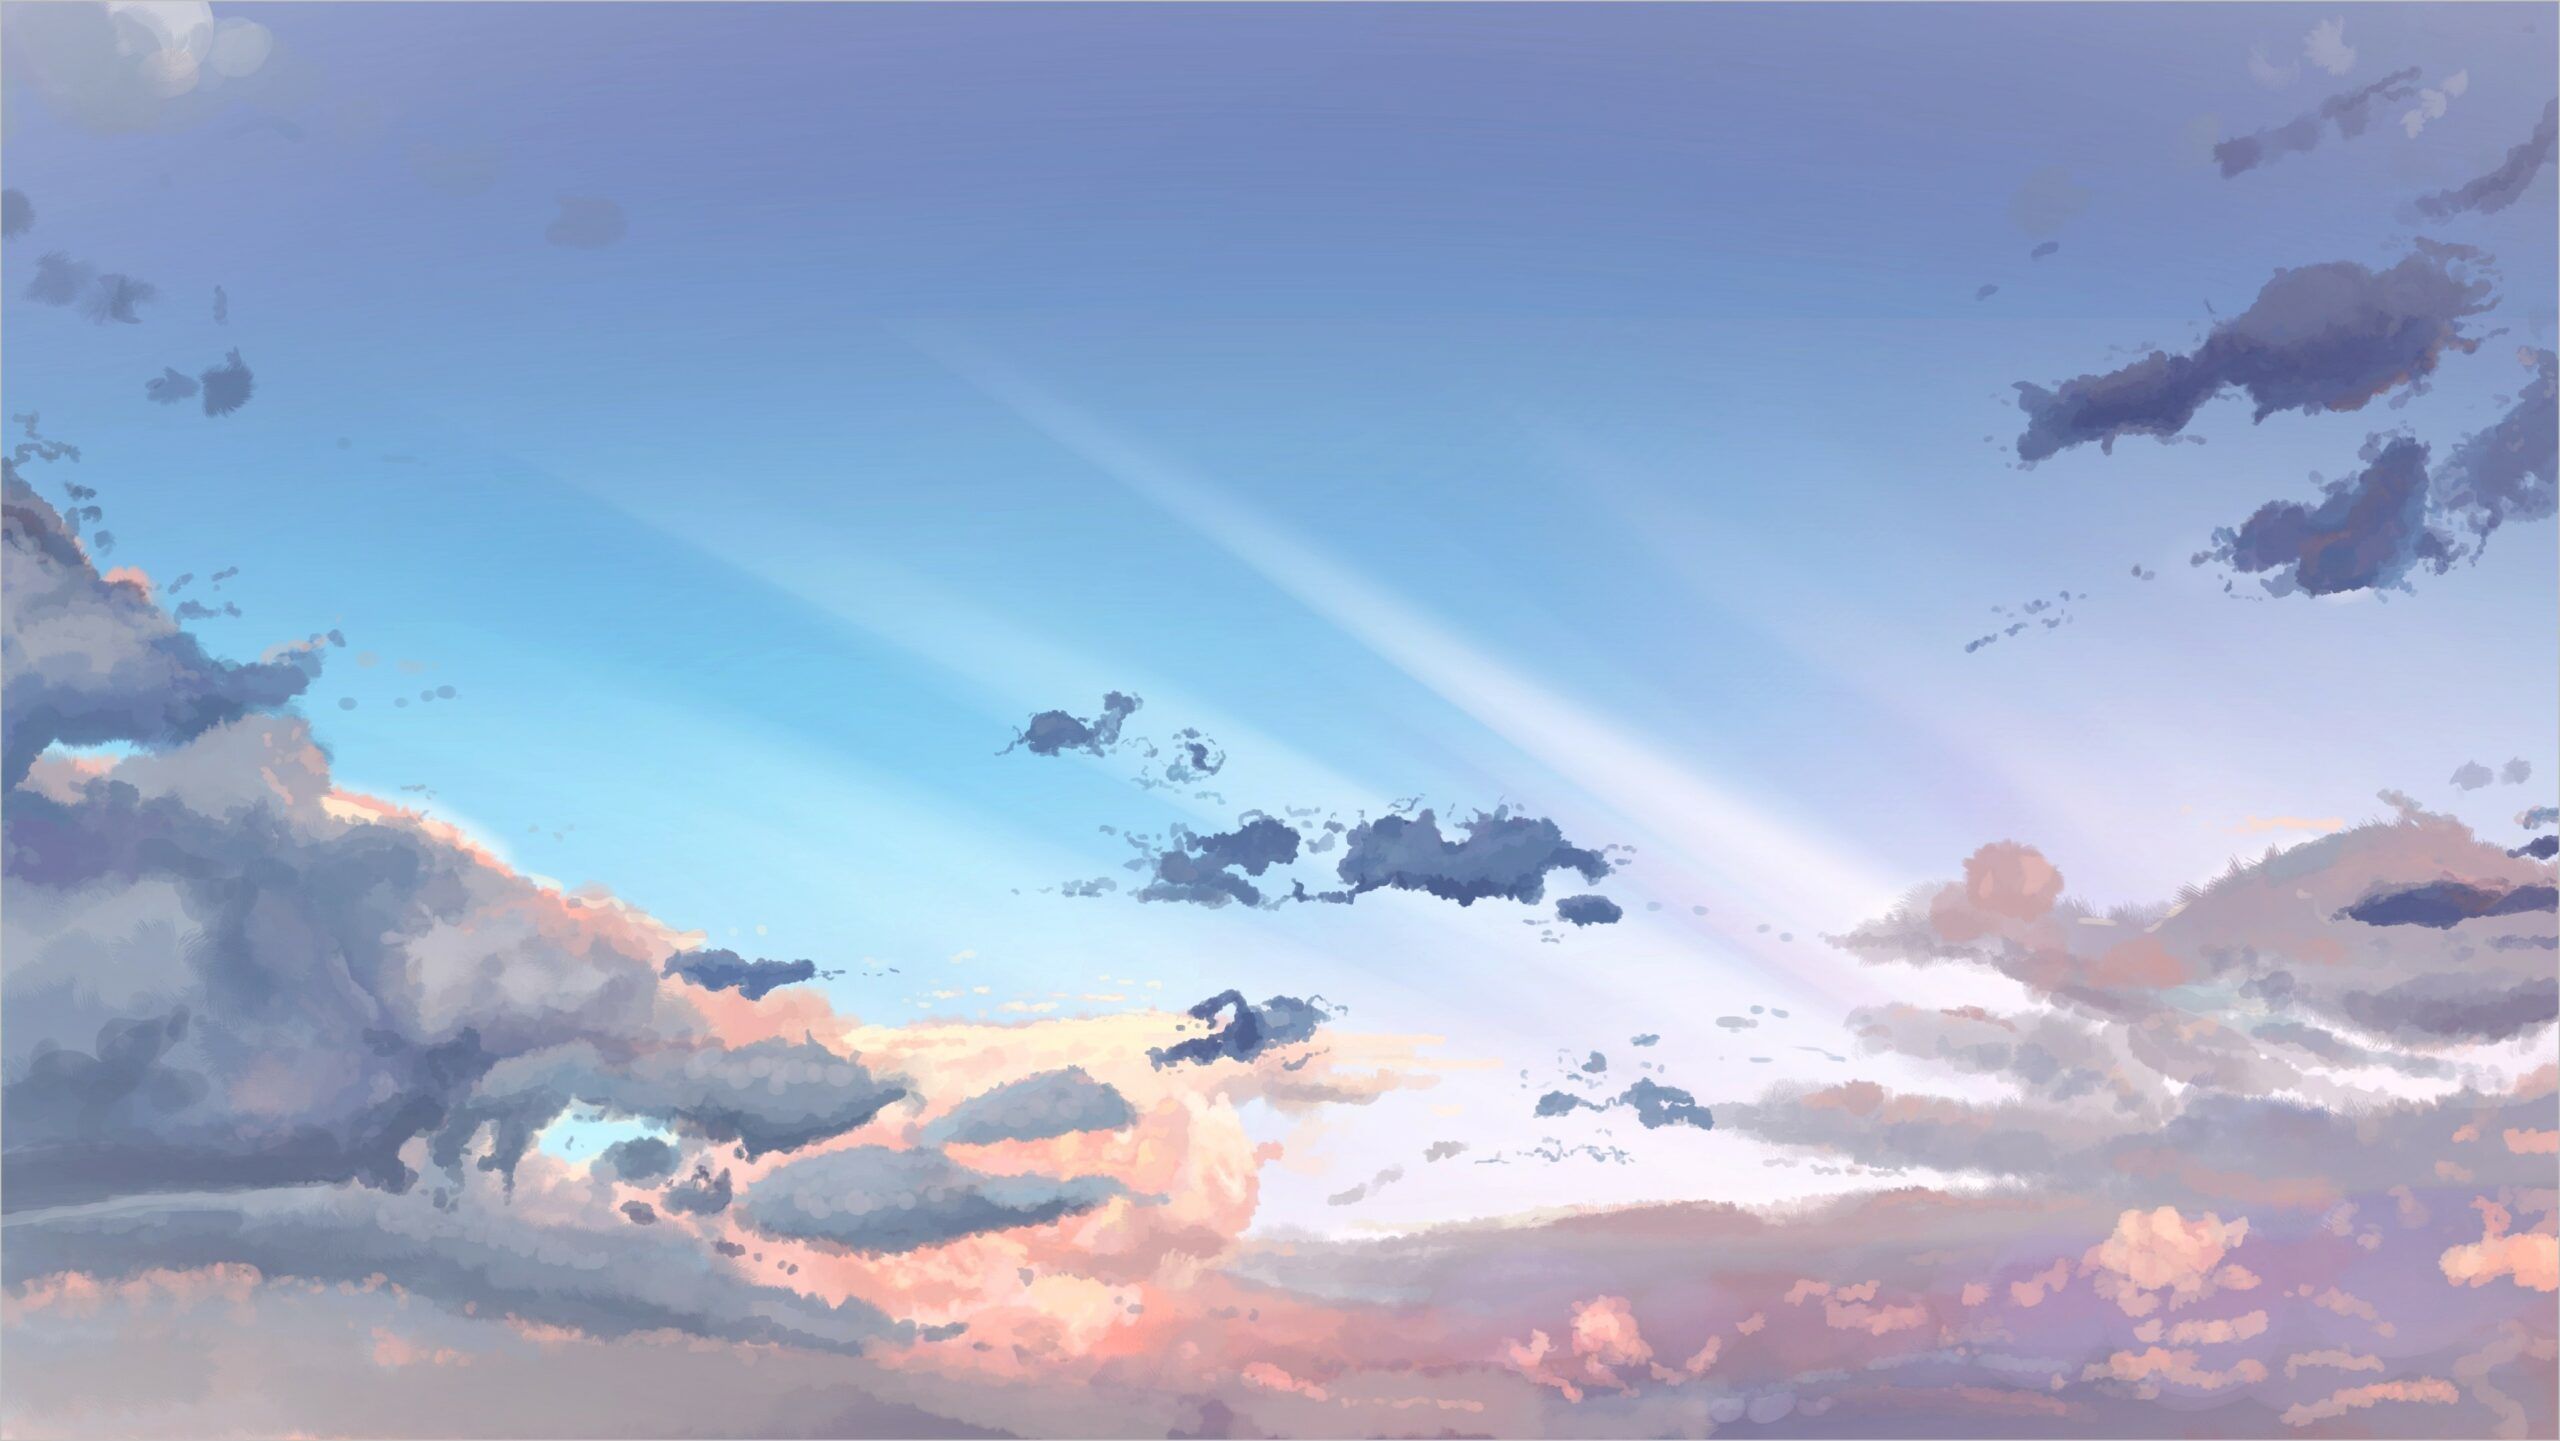 Anime Wallpaper 4k Sky. Sky anime, Night sky wallpaper, Anime wallpaper